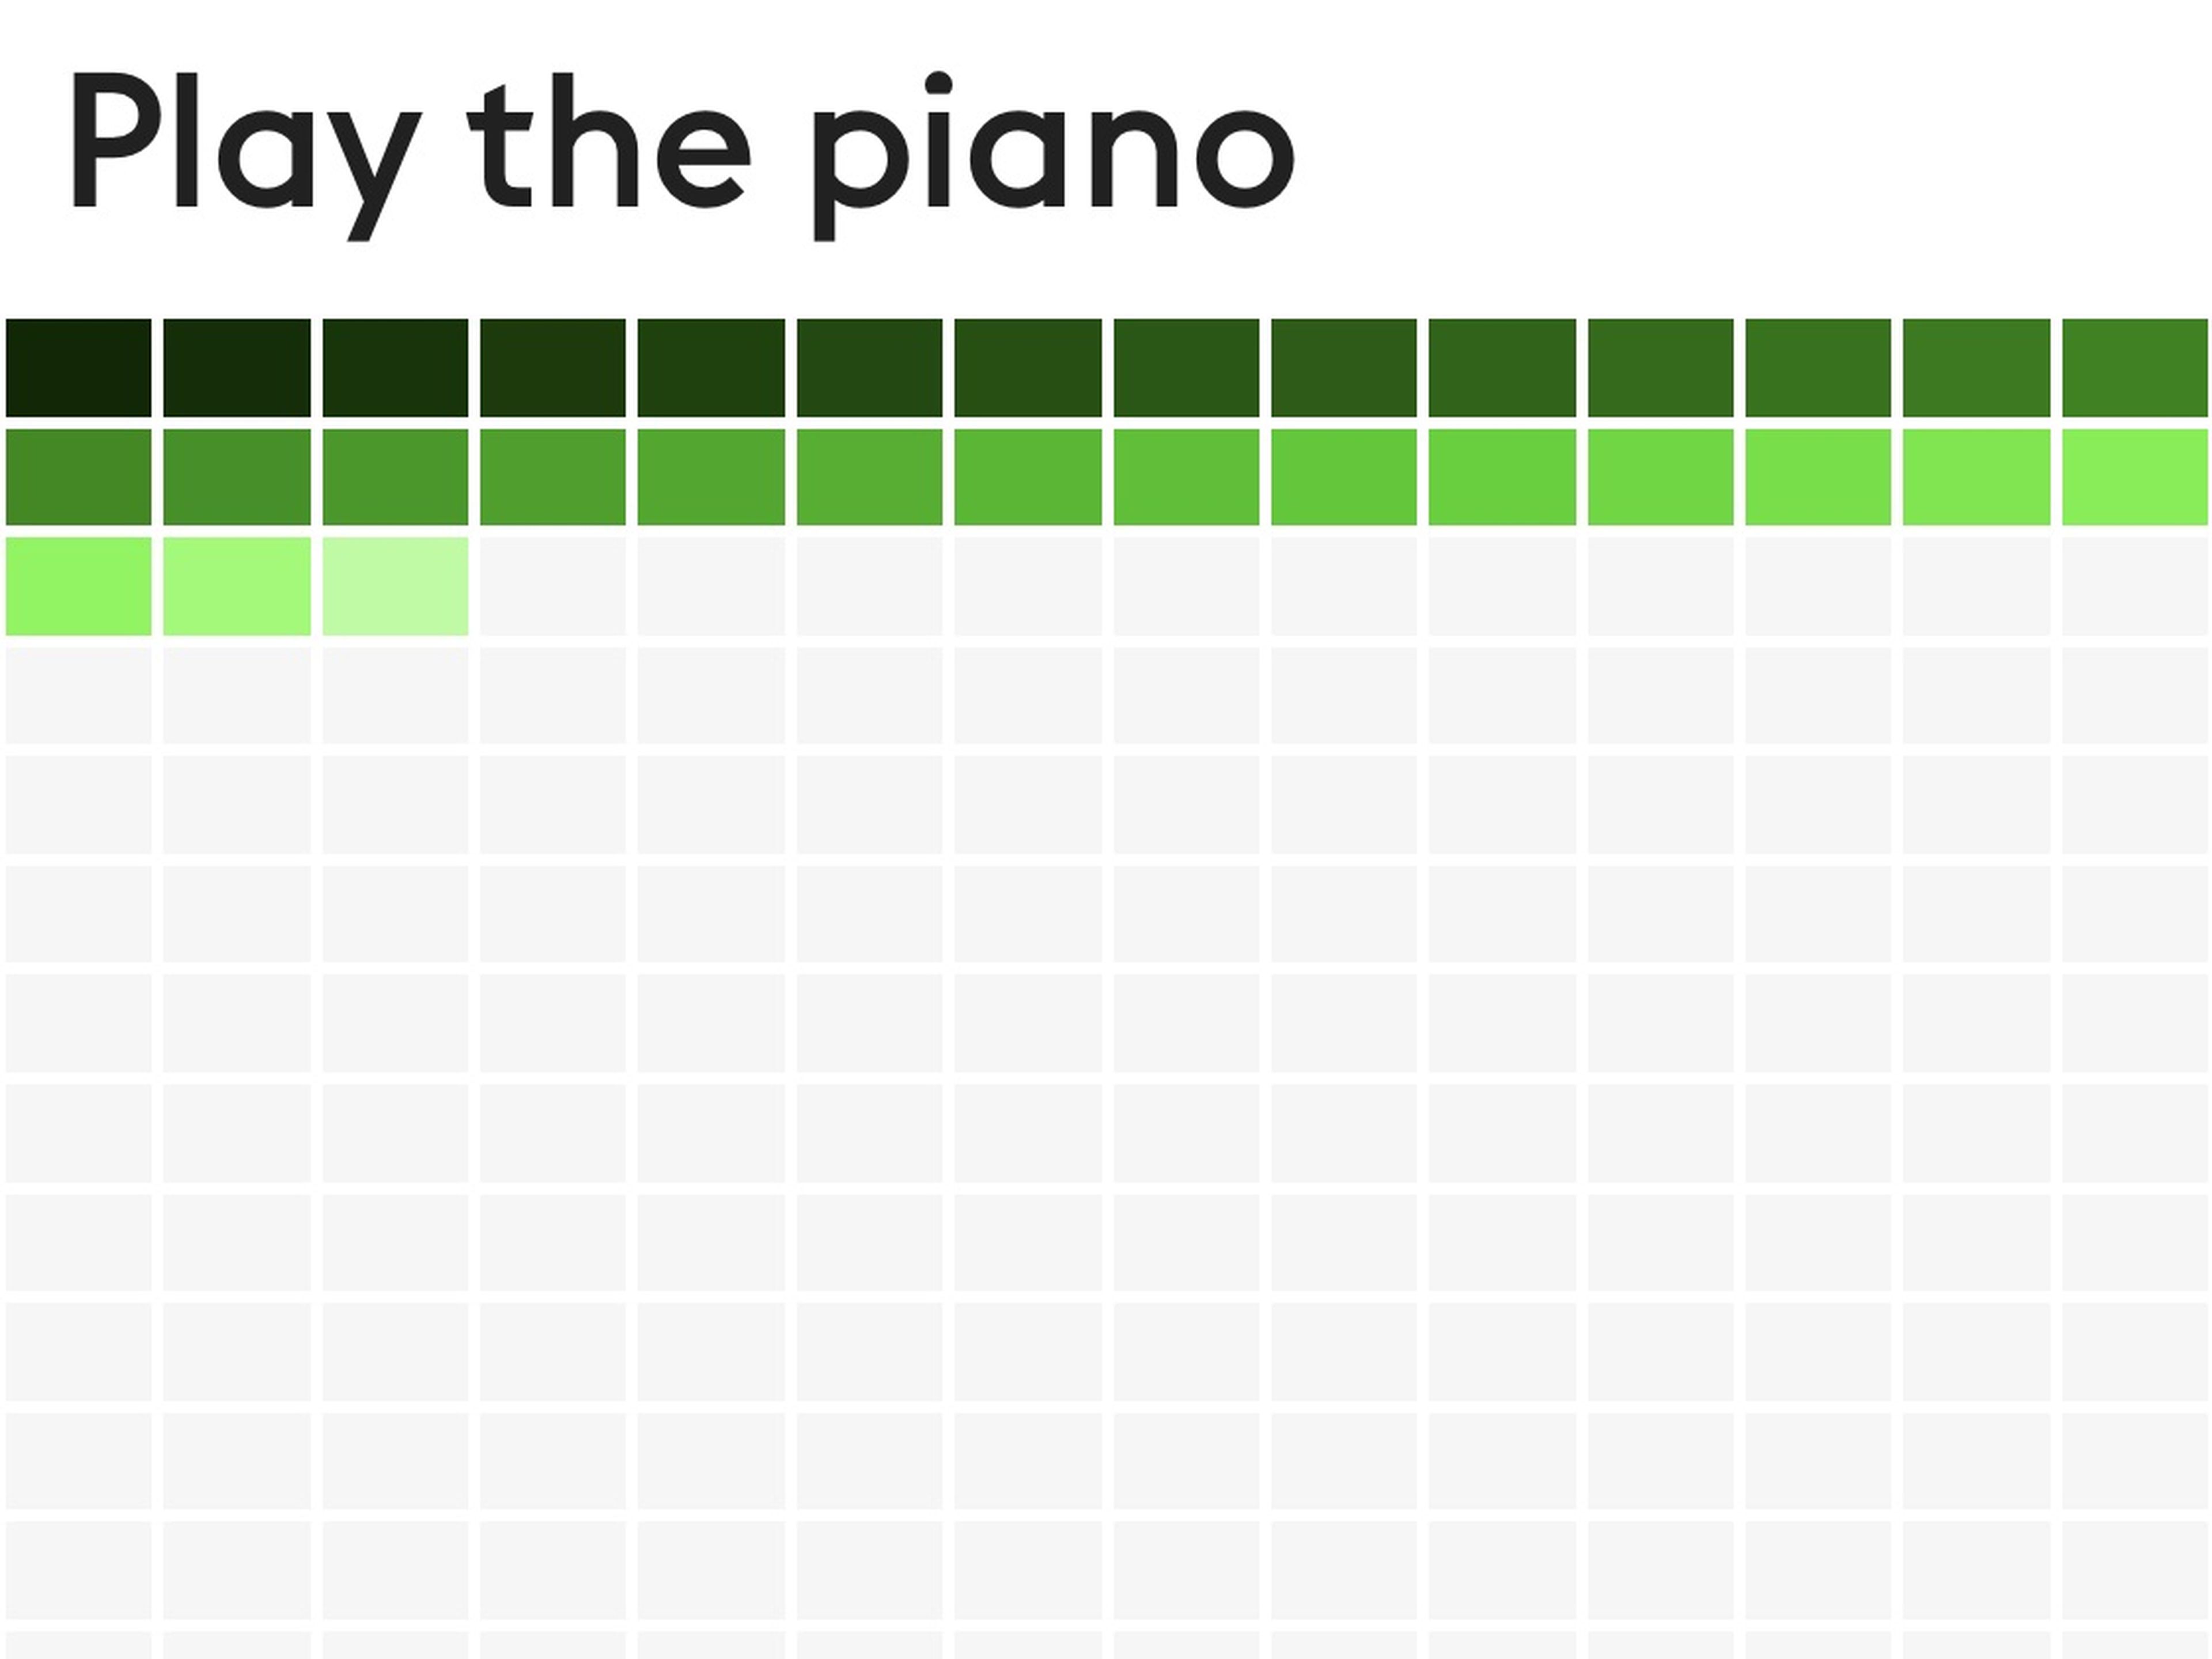 Cada día que el autor completaba su tarea de tocar el piano, la racha crecía.